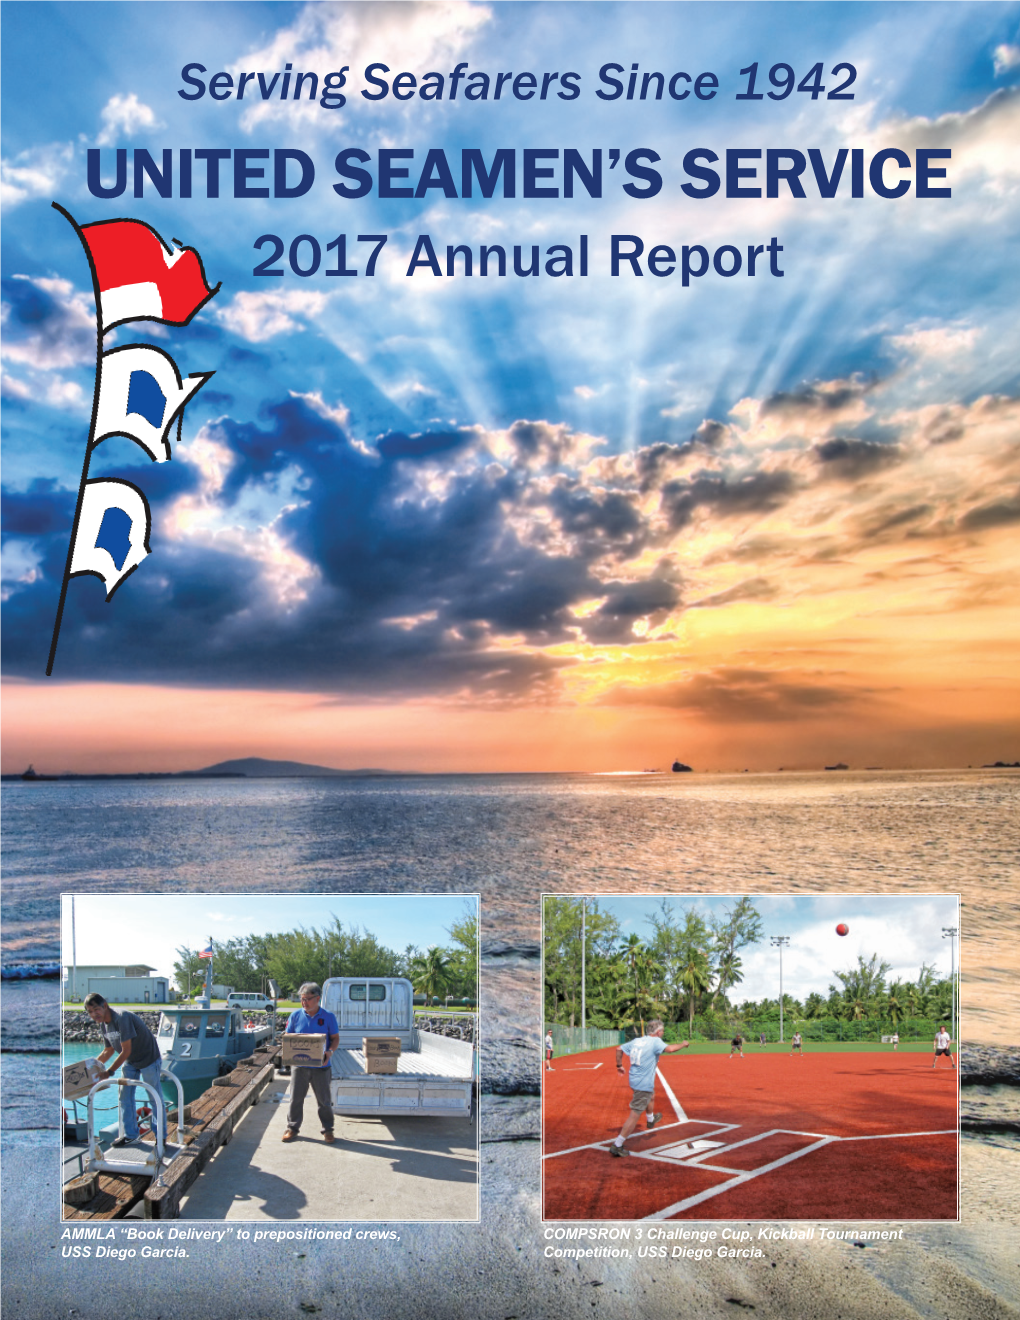 United Seamen's Service Our Mission